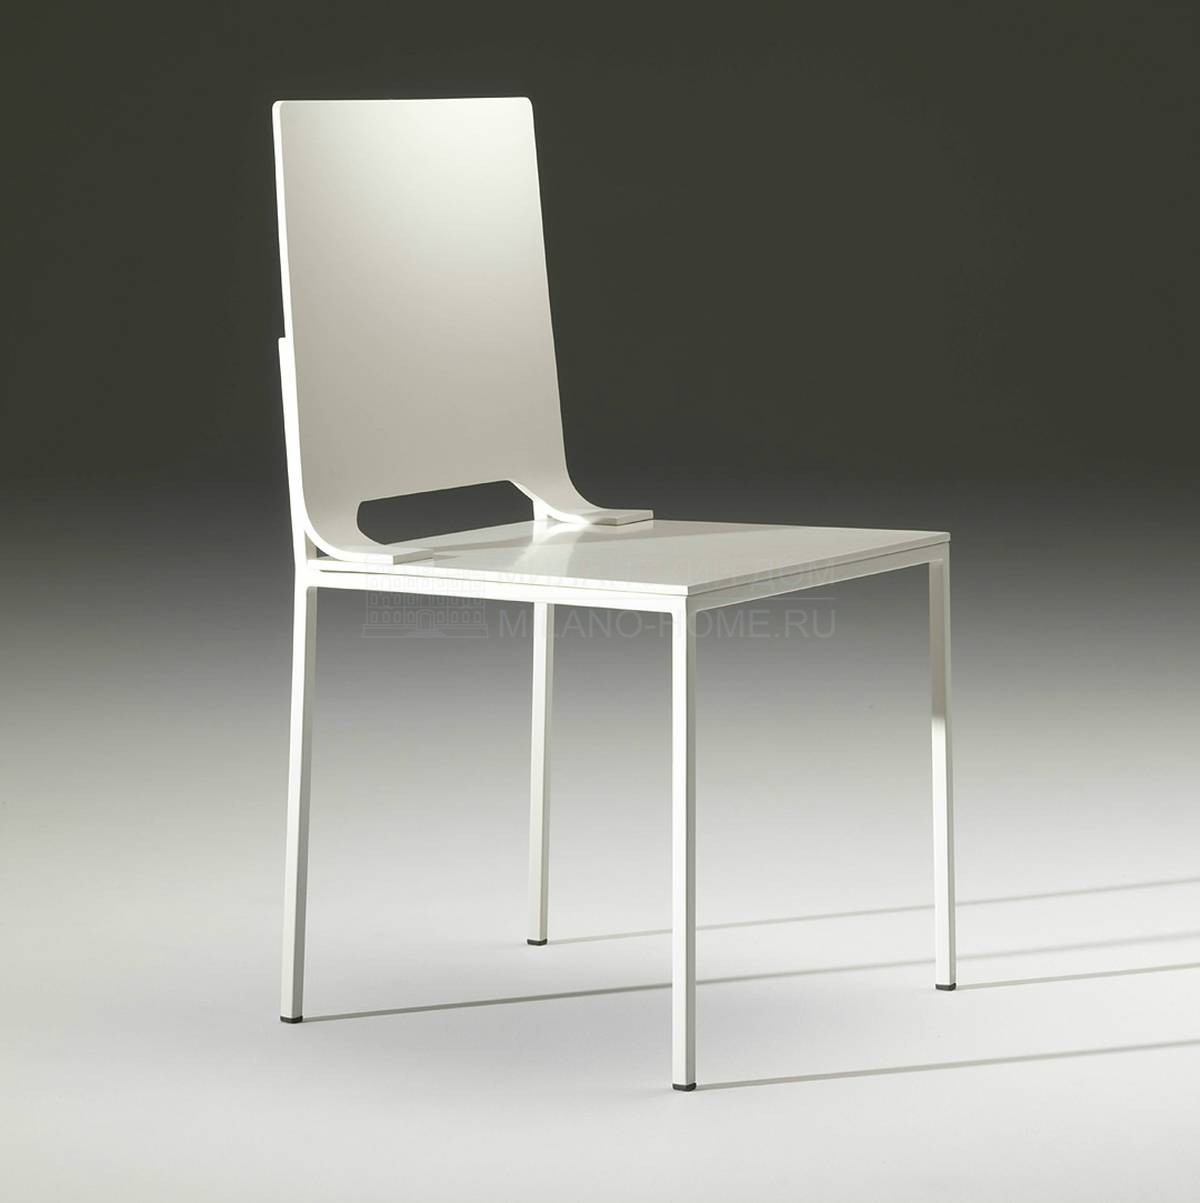 Металлический / Пластиковый стул Blanca chair из Италии фабрики DOMODINAMICA